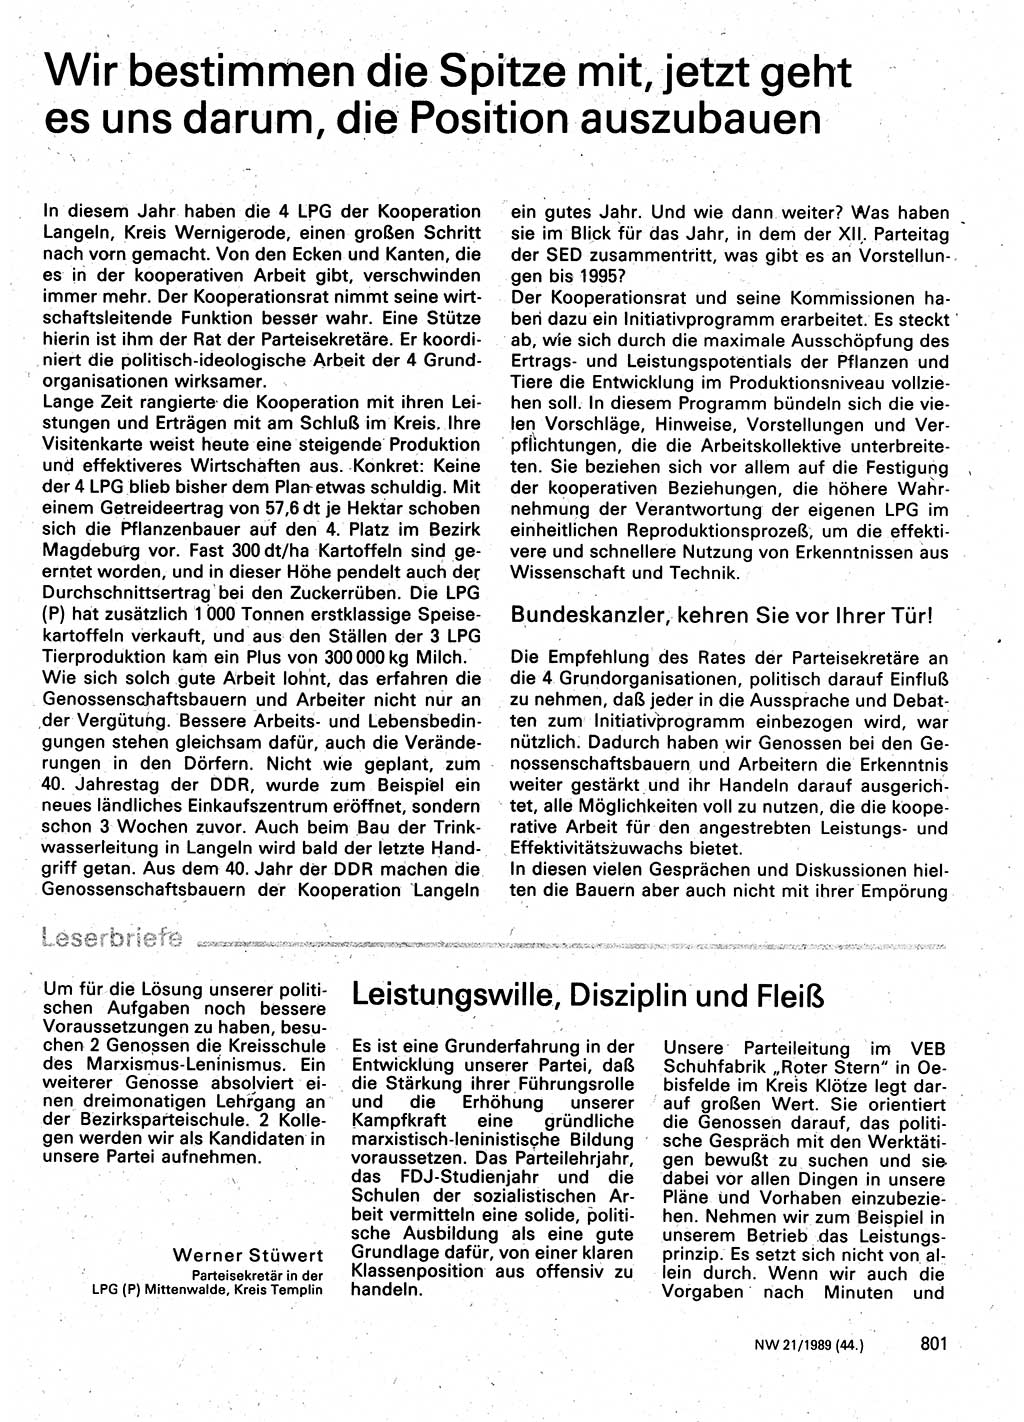 Neuer Weg (NW), Organ des Zentralkomitees (ZK) der SED (Sozialistische Einheitspartei Deutschlands) für Fragen des Parteilebens, 44. Jahrgang [Deutsche Demokratische Republik (DDR)] 1989, Seite 801 (NW ZK SED DDR 1989, S. 801)